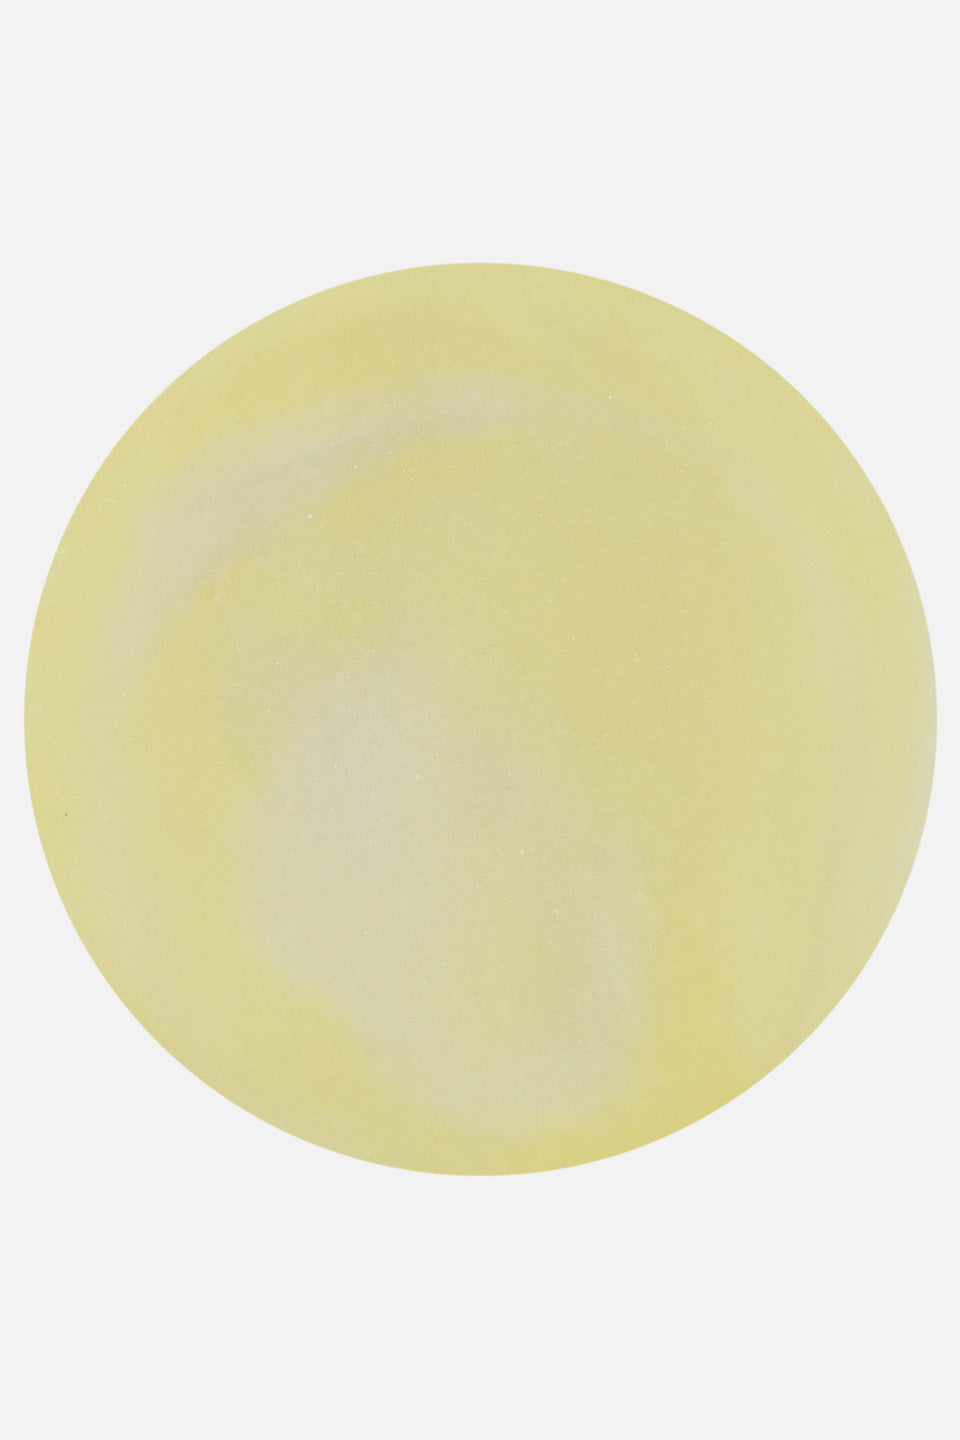 Polvo acrílico amarillo pastel 5 g